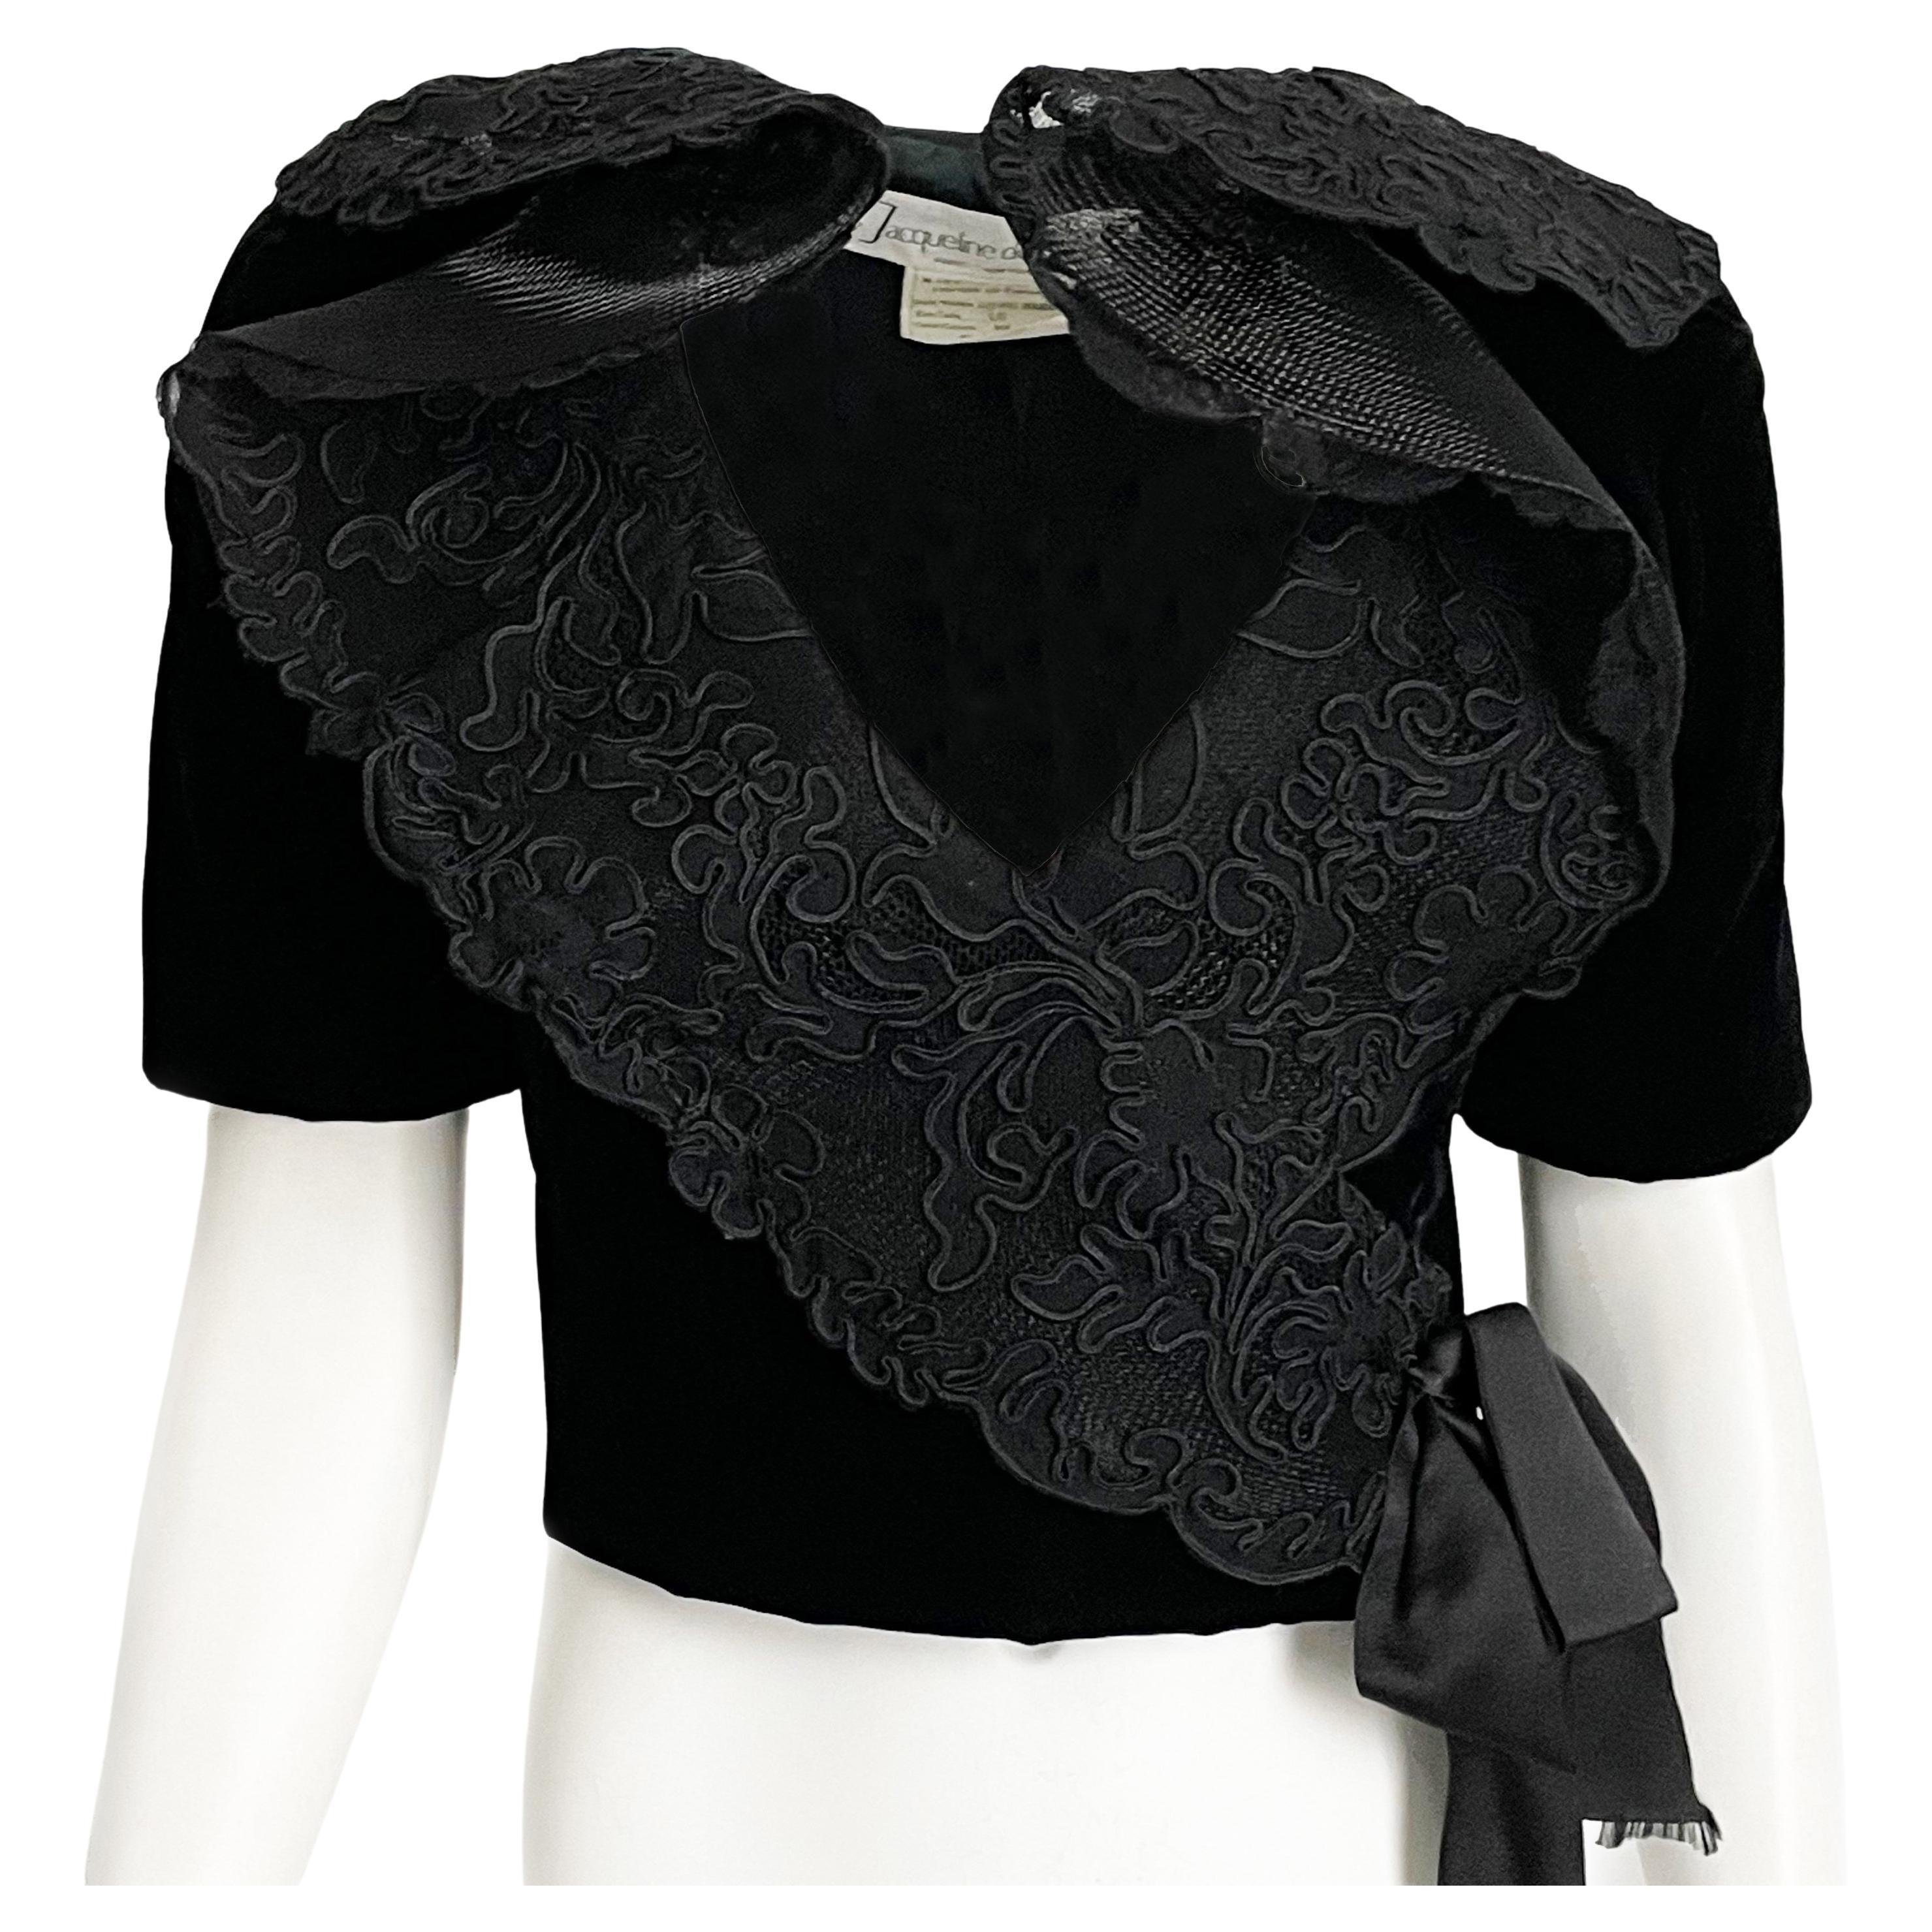 Jacqueline de Ribes Jacket Bolero Cropped Formal Couture Black Lace Velvet  For Sale